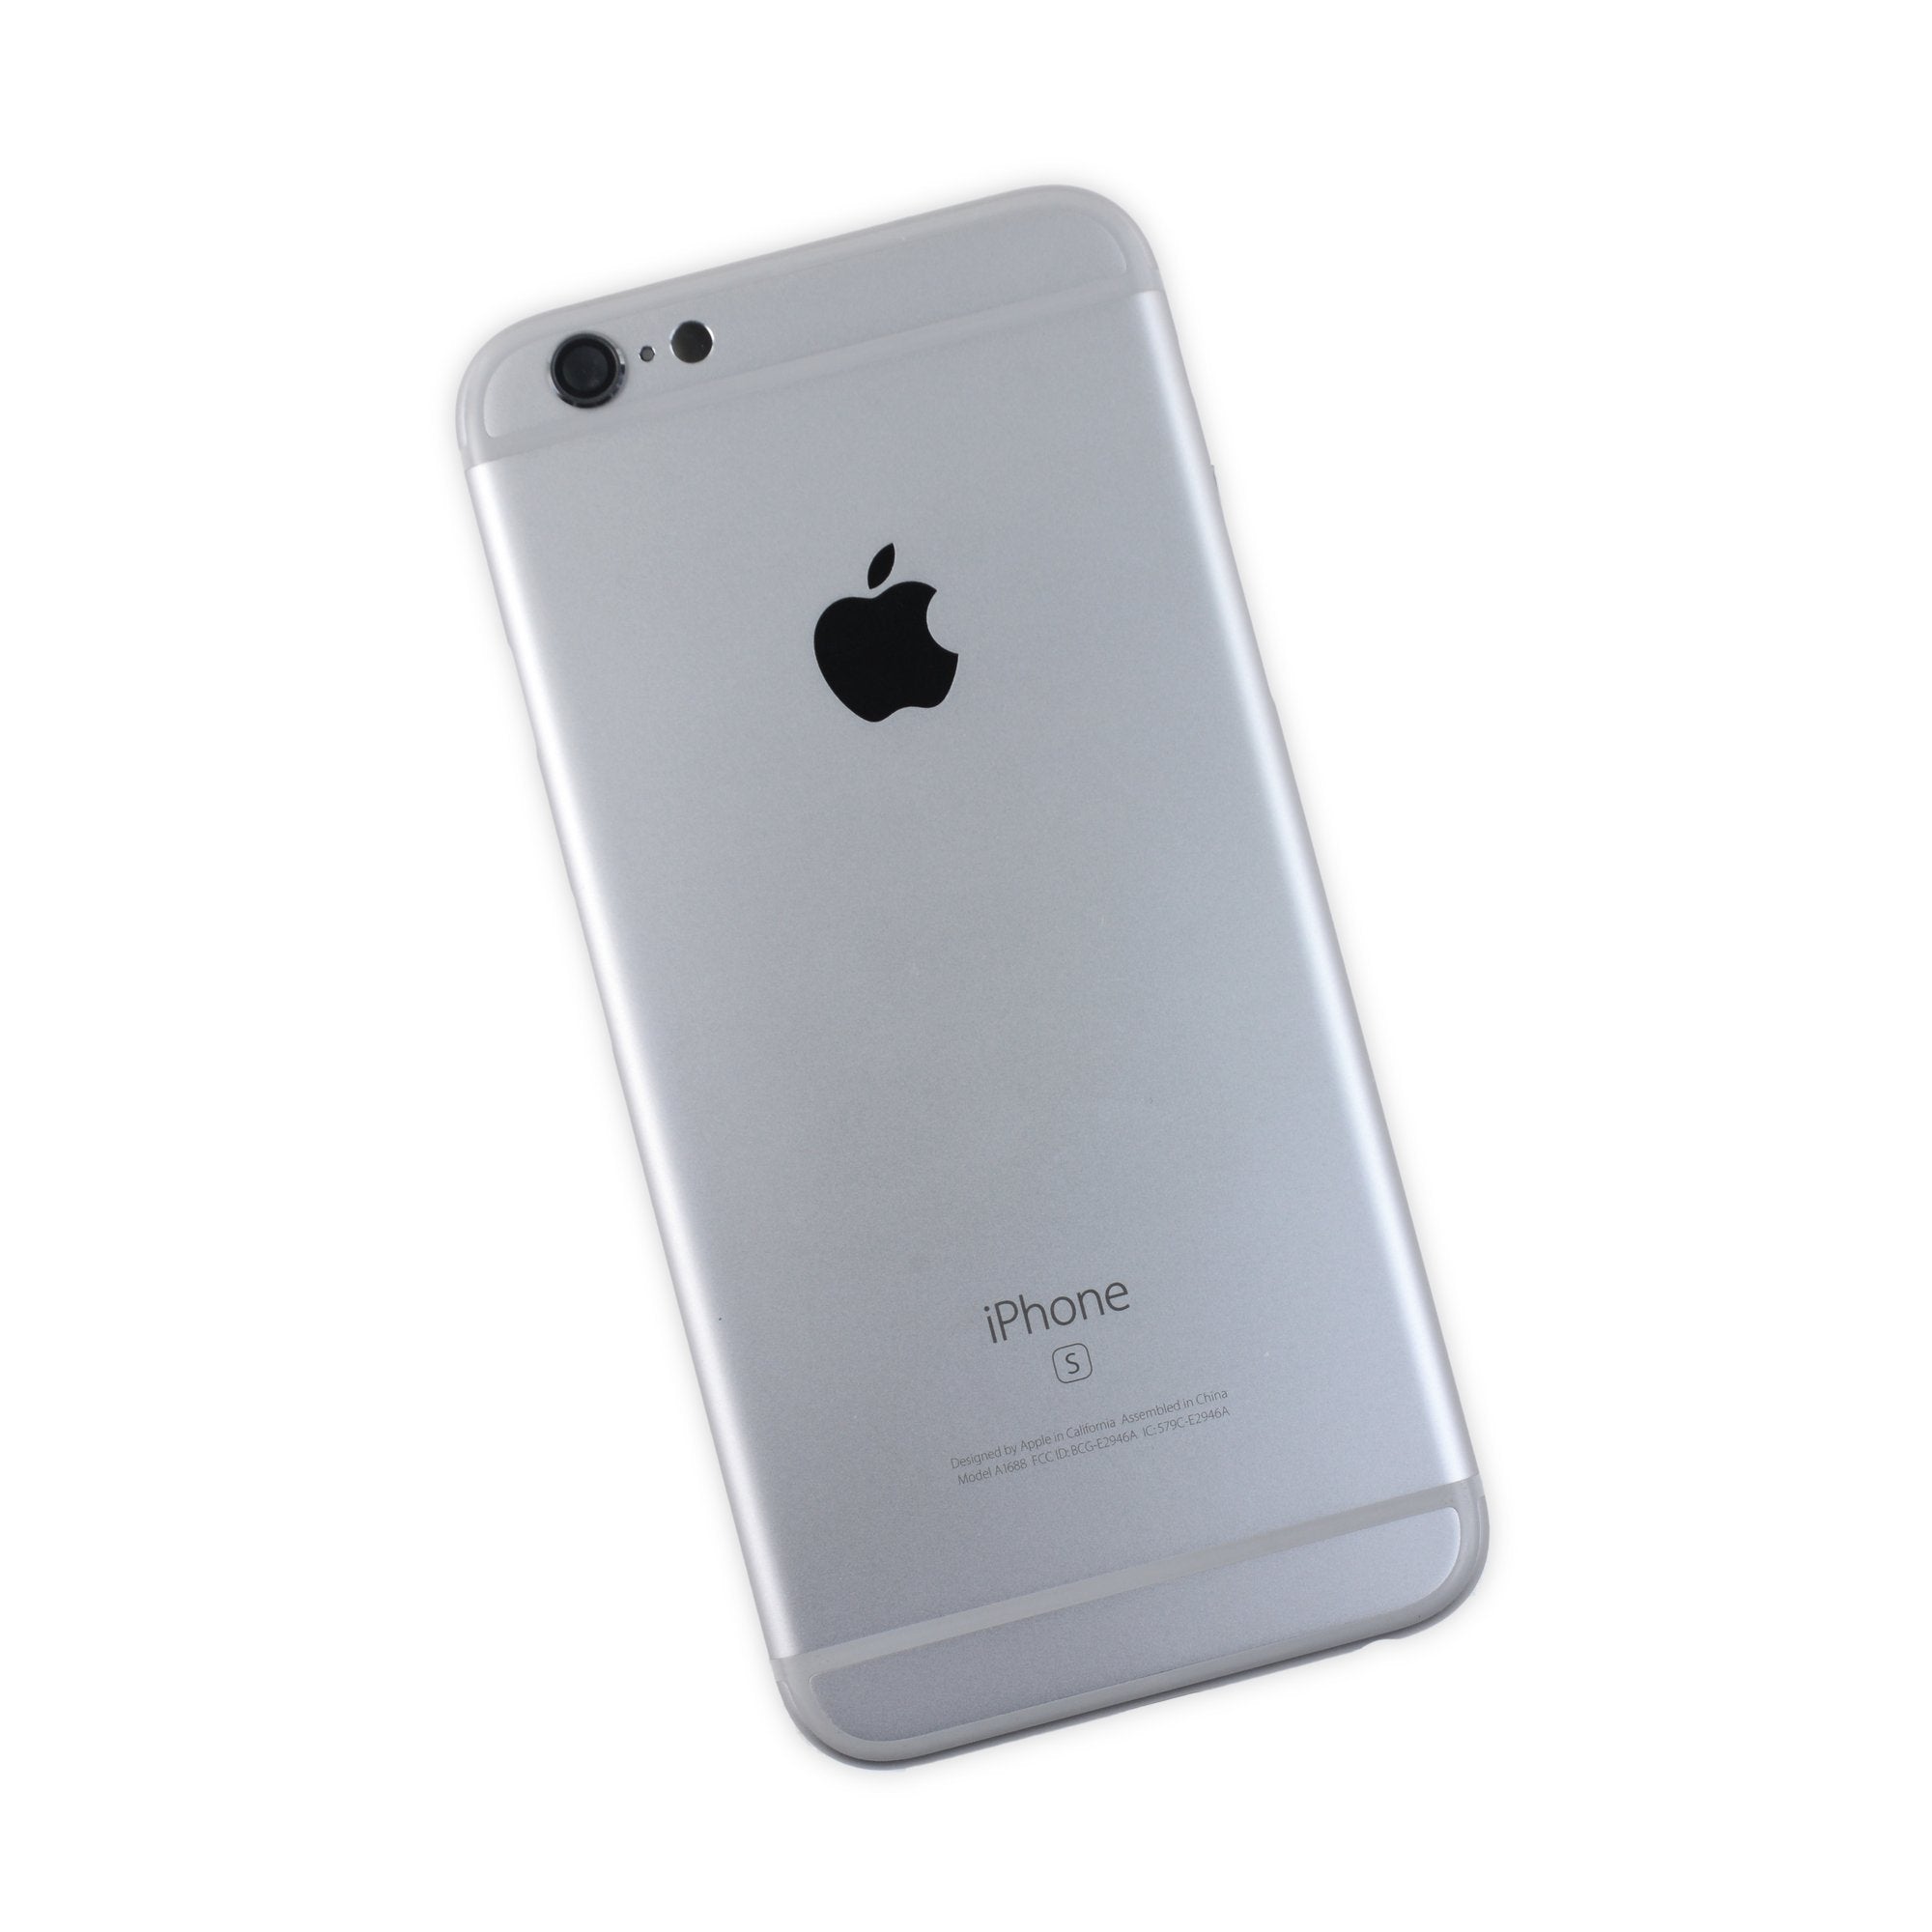 Задний крышка айфон купить. Apple iphone a1688. Айфон 6s оригинал. Iphone 6s крышка. Iphone 6s задняя крышка оригинал.